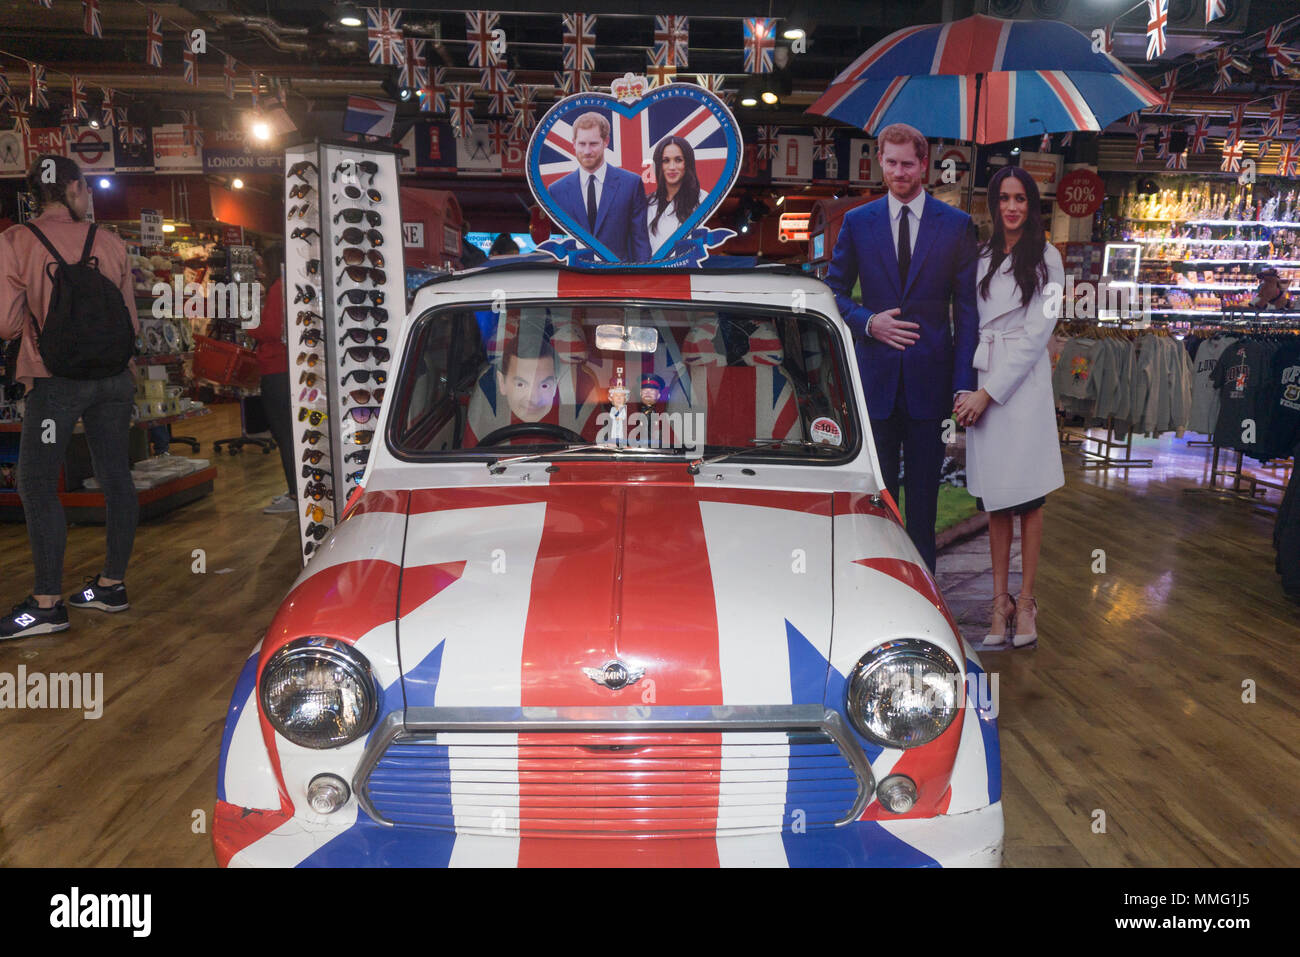 Londres, Royaume-Uni - 11 MAI 2018 : célébration de la présentation en magasin mariage du prince Harry et Meghan markle. Banque D'Images